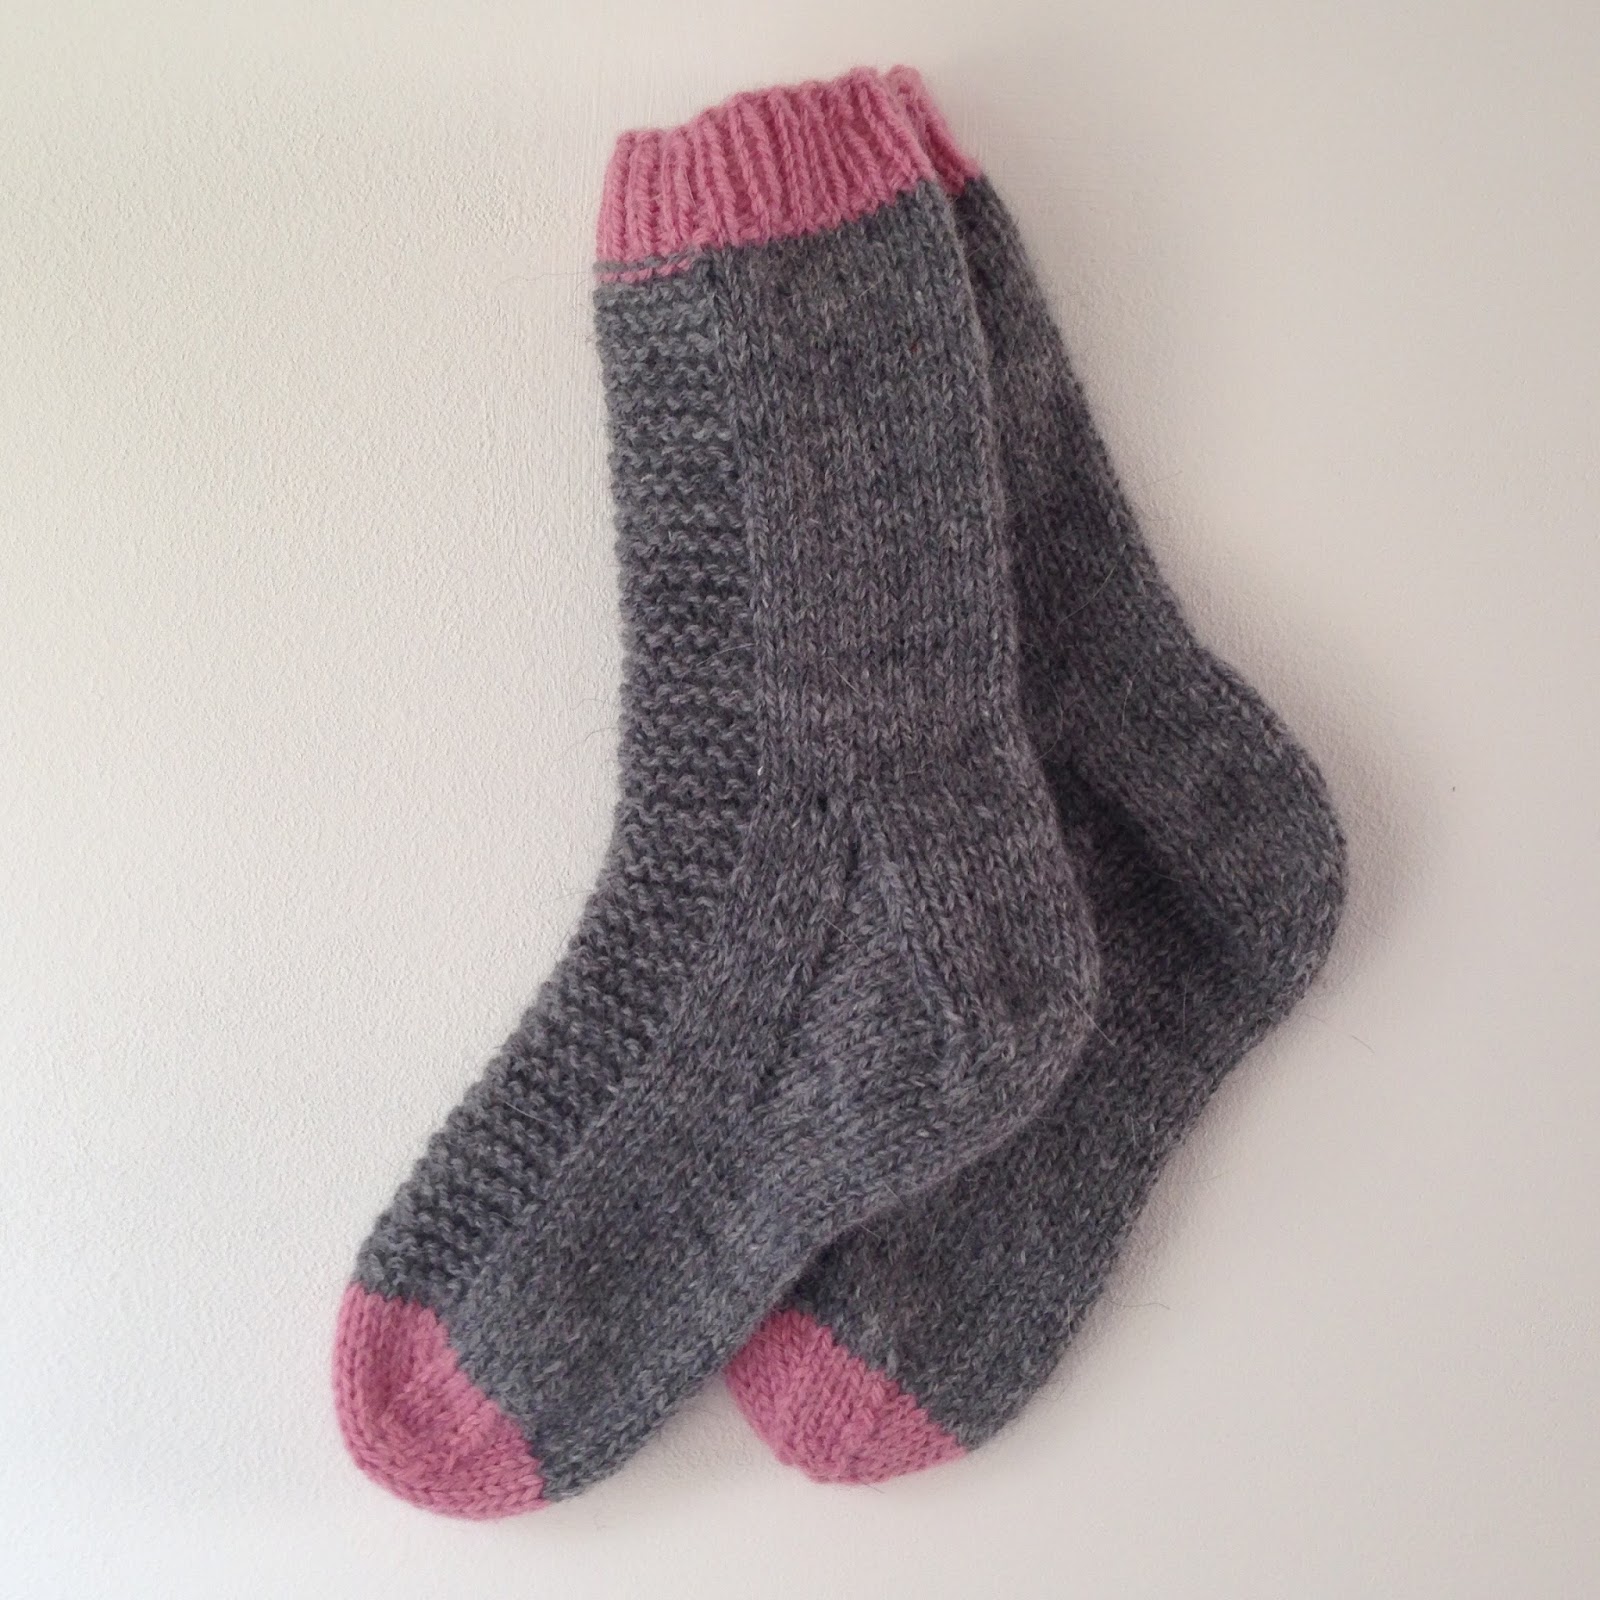 modele de chaussette a tricoter gratuit